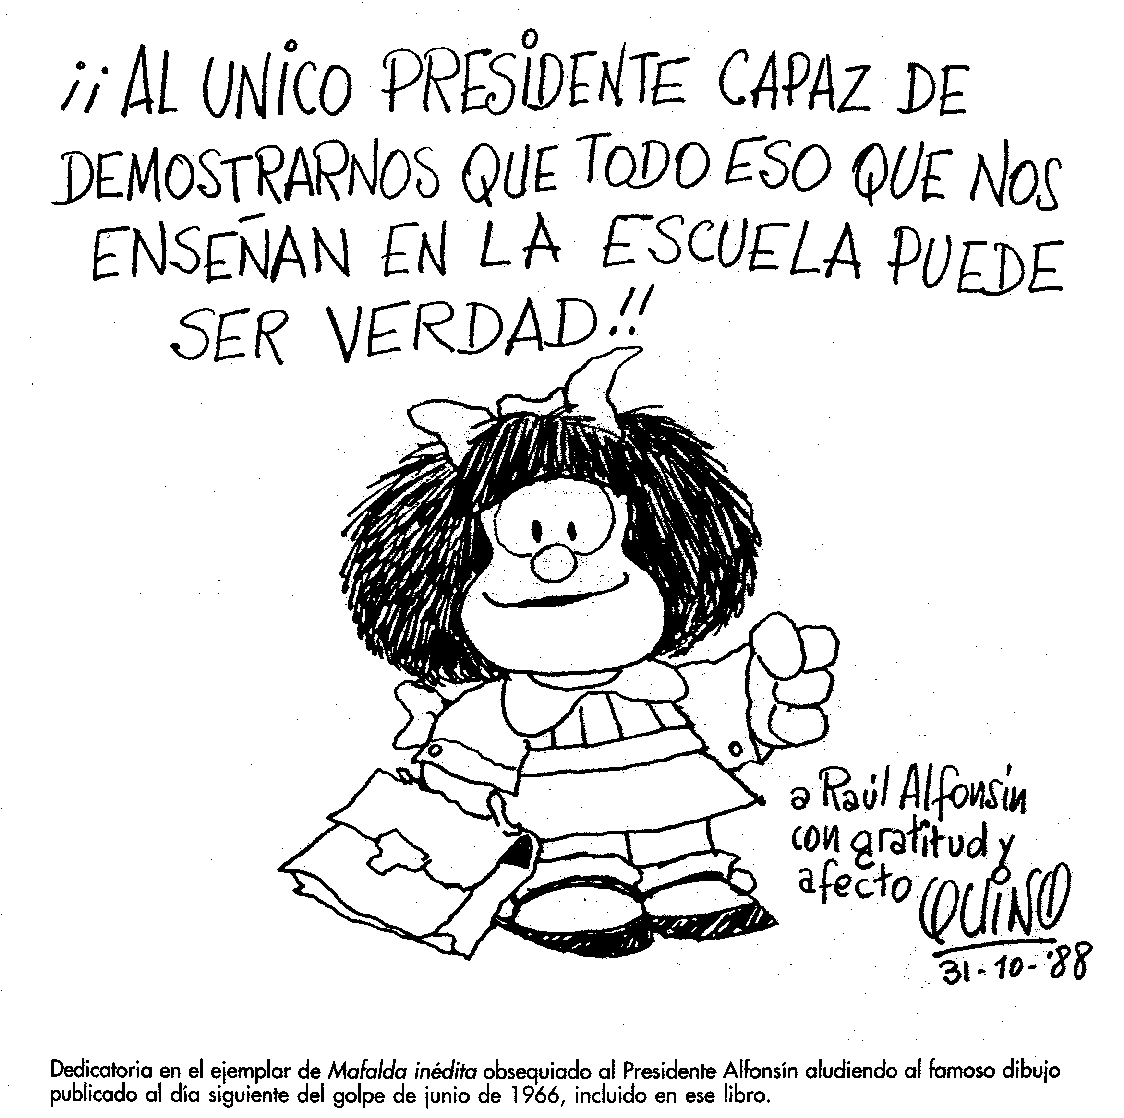 Dibujo de Quino (Mafalda)  dedicado a RAÚL ALFONSÍN